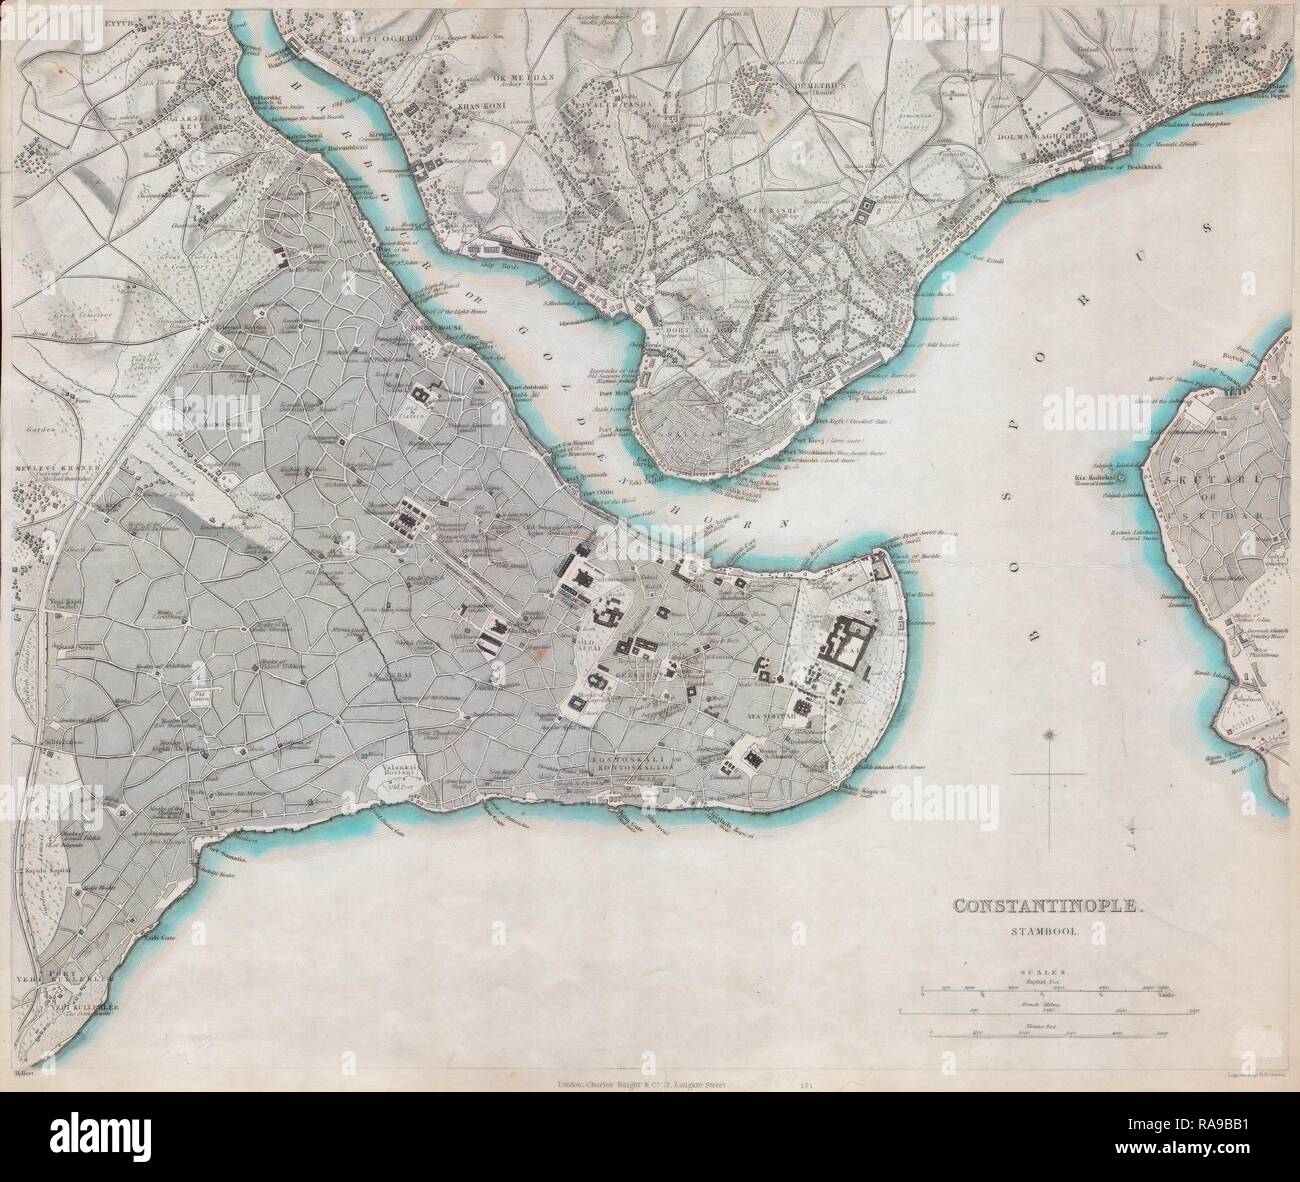 1840 Sduk Mapa De Constantinopla Estambul Turquía Reimagined By